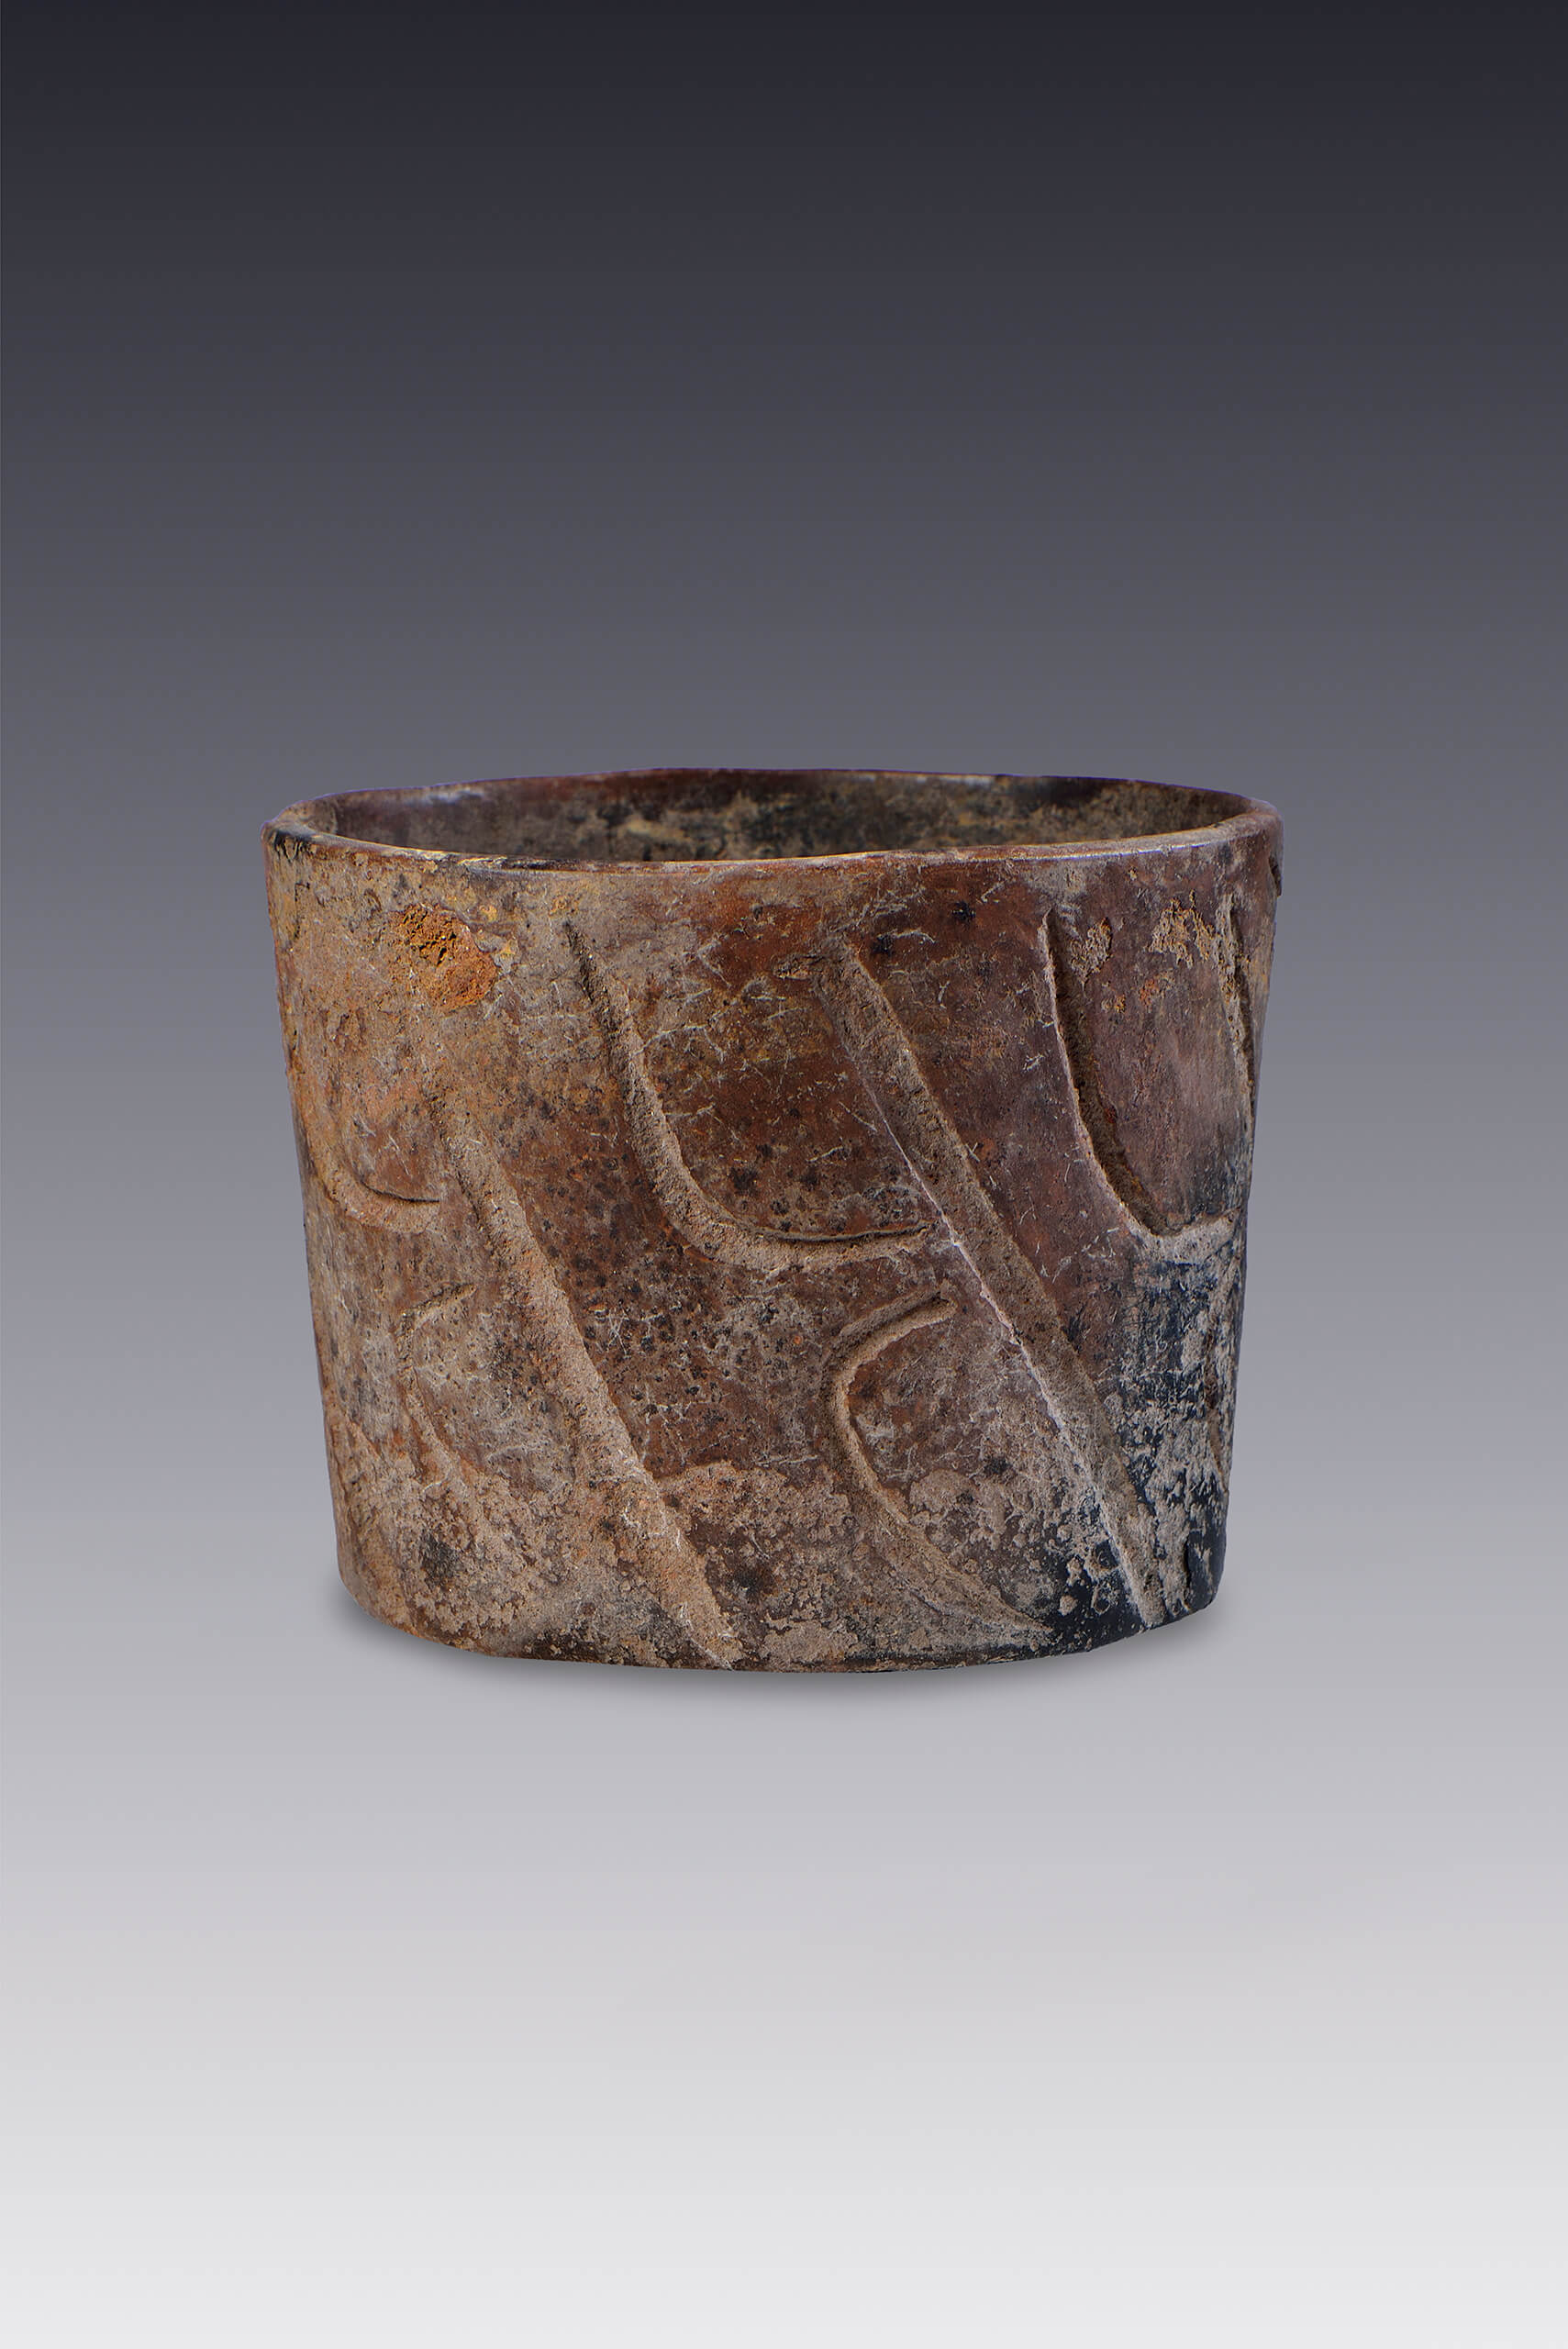 Vaso con motivos geométricos | El México antiguo. Salas de Arte Prehispánico | Museo Amparo, Puebla